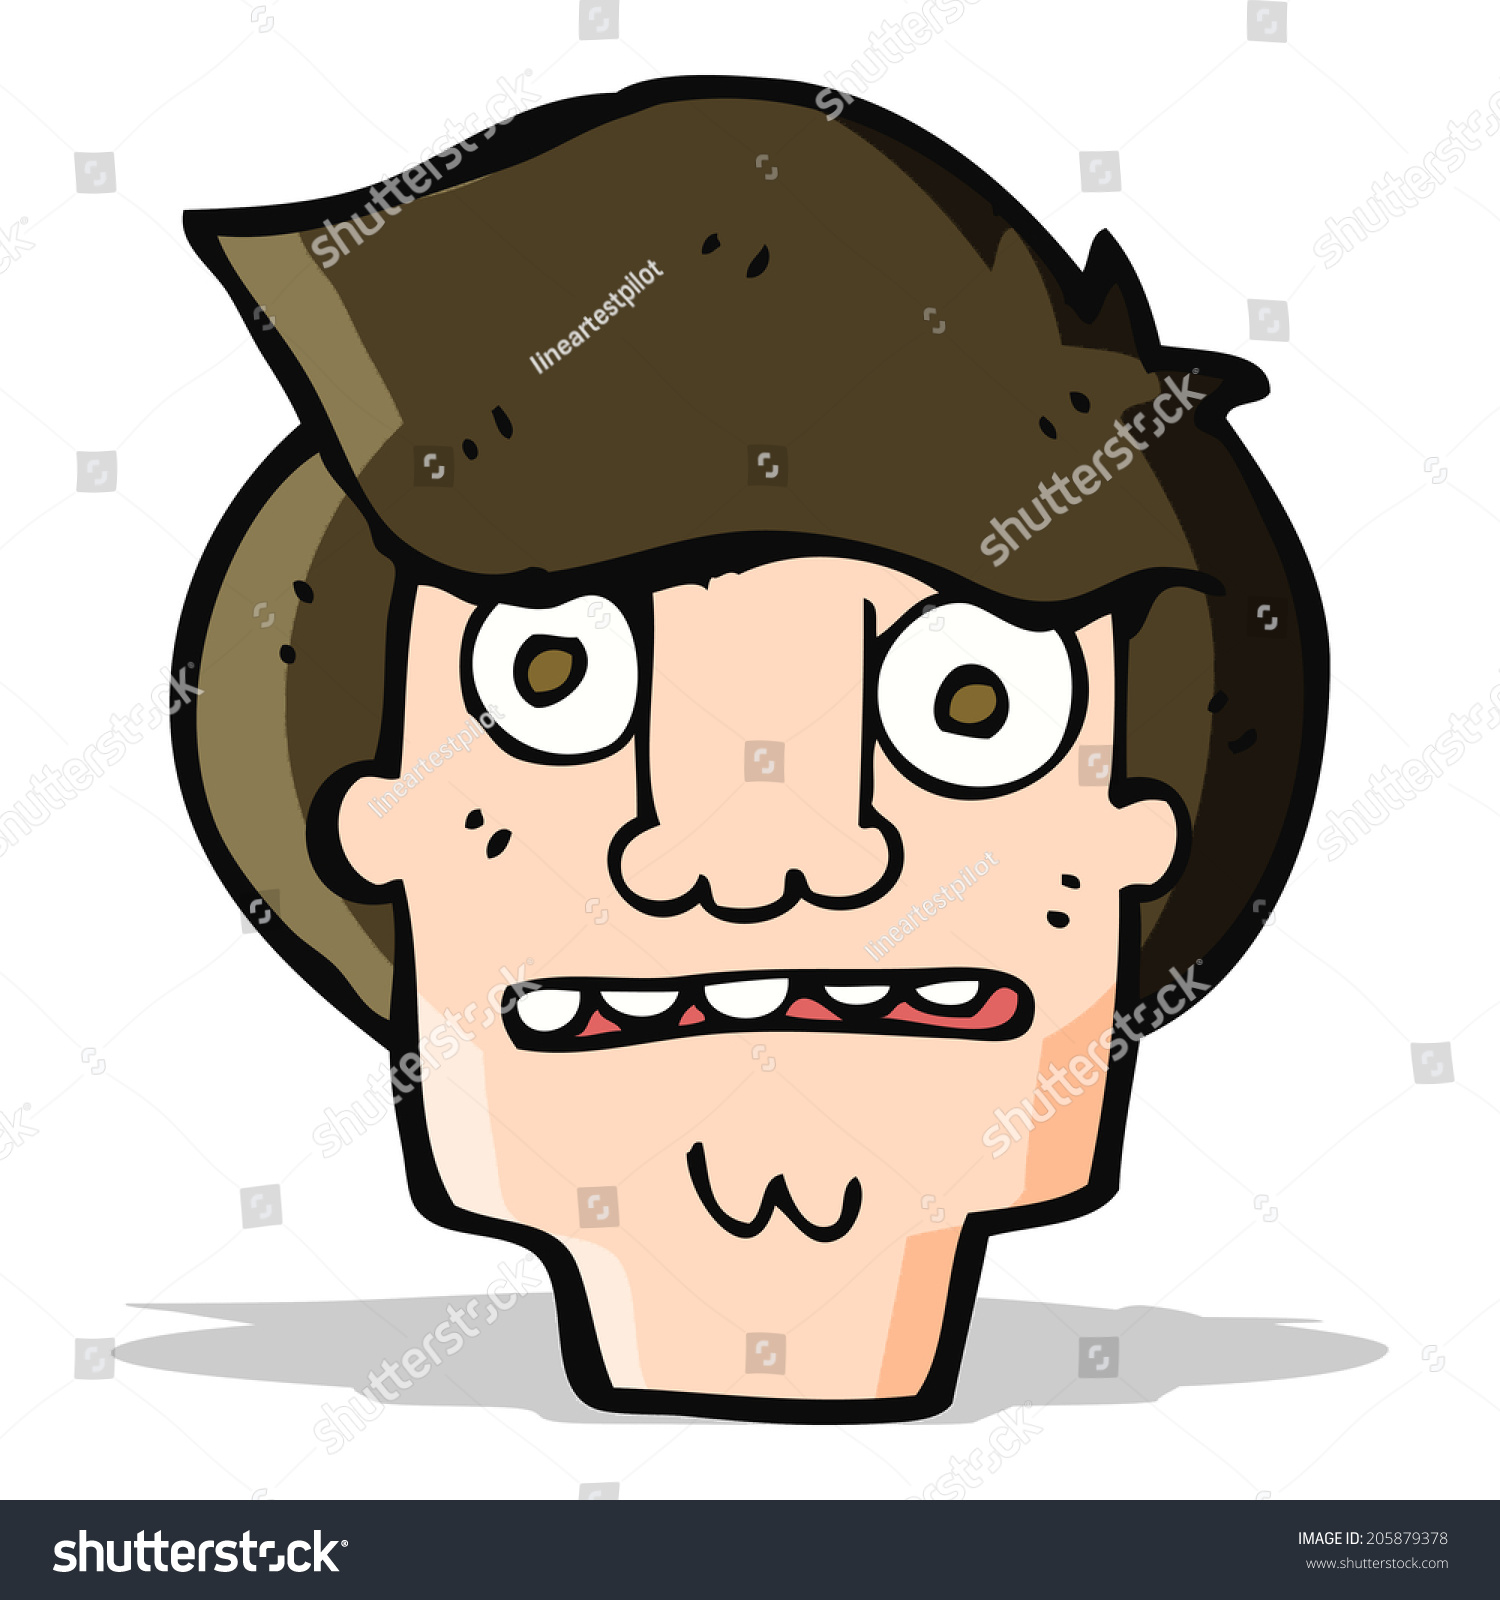 Cartoon Shocked Face Stock Illustration 205879378 - Shutterstock